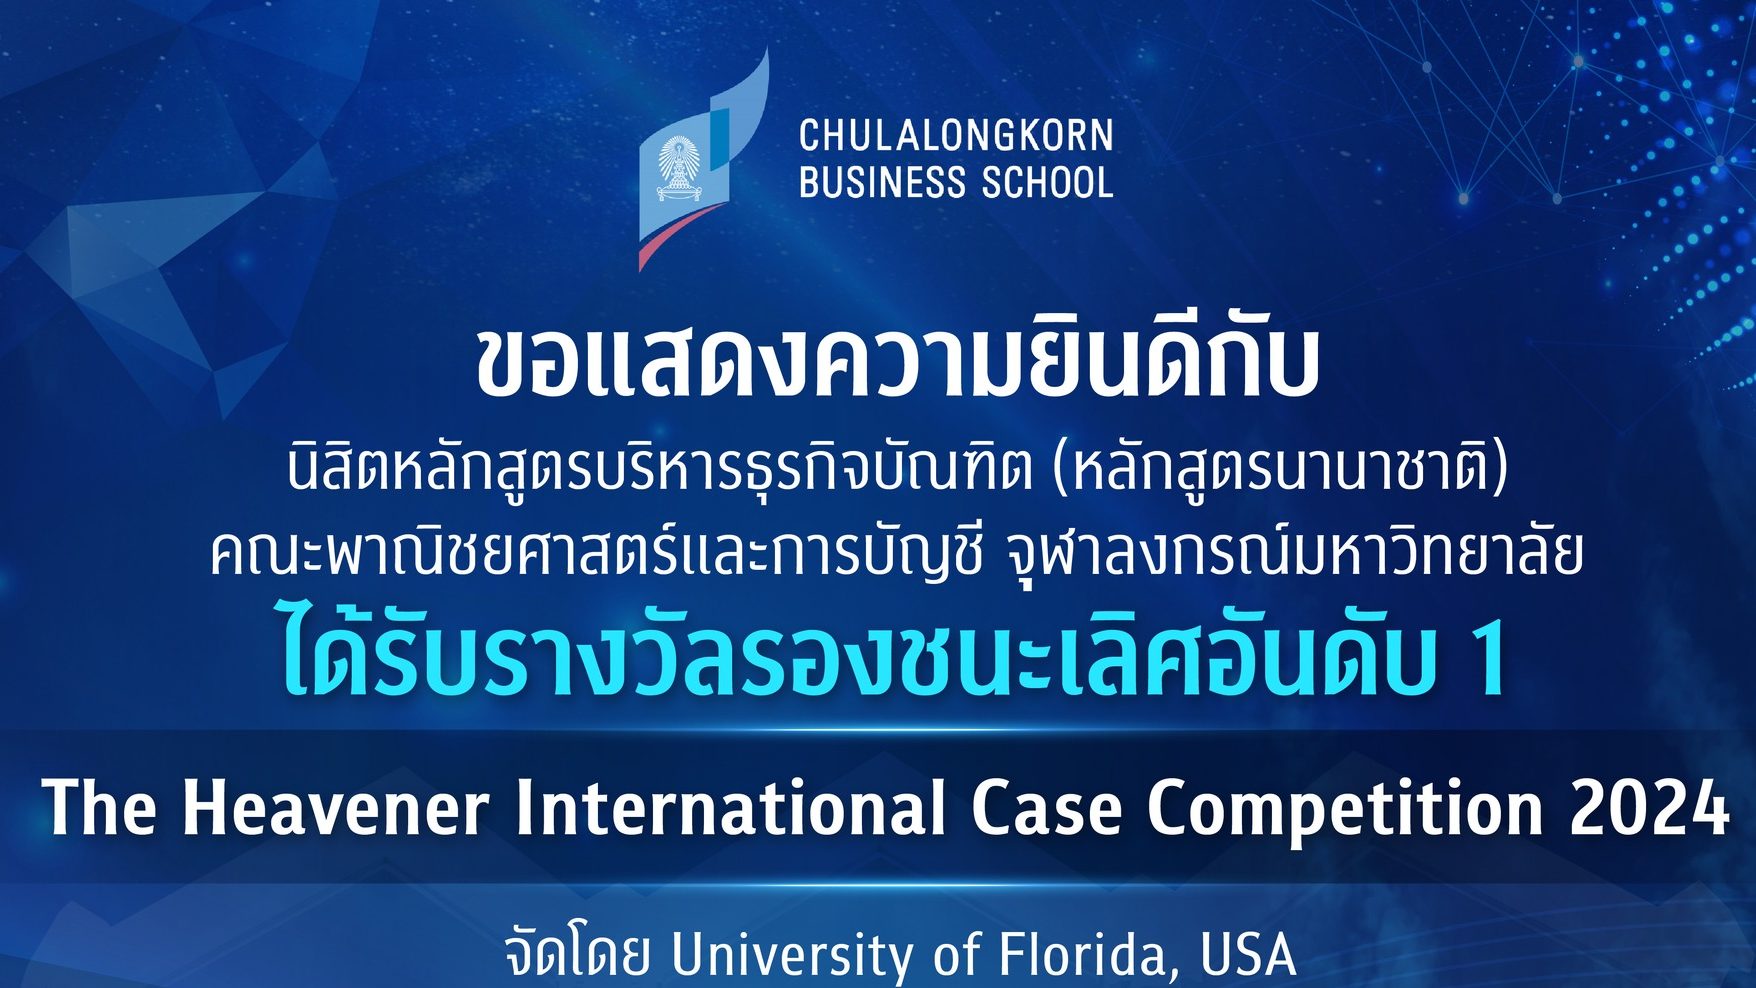 นิสิต BBA คณะพาณิชยศาสตร์และการบัญชี จุฬาฯ คว้ารางวัลรองชนะเลิศอันดับ1 ในการแข่งขัน Heavener International Case Competition 2024 ณ รัฐฟลอริดา ประเทศสหรัฐอเมริกา